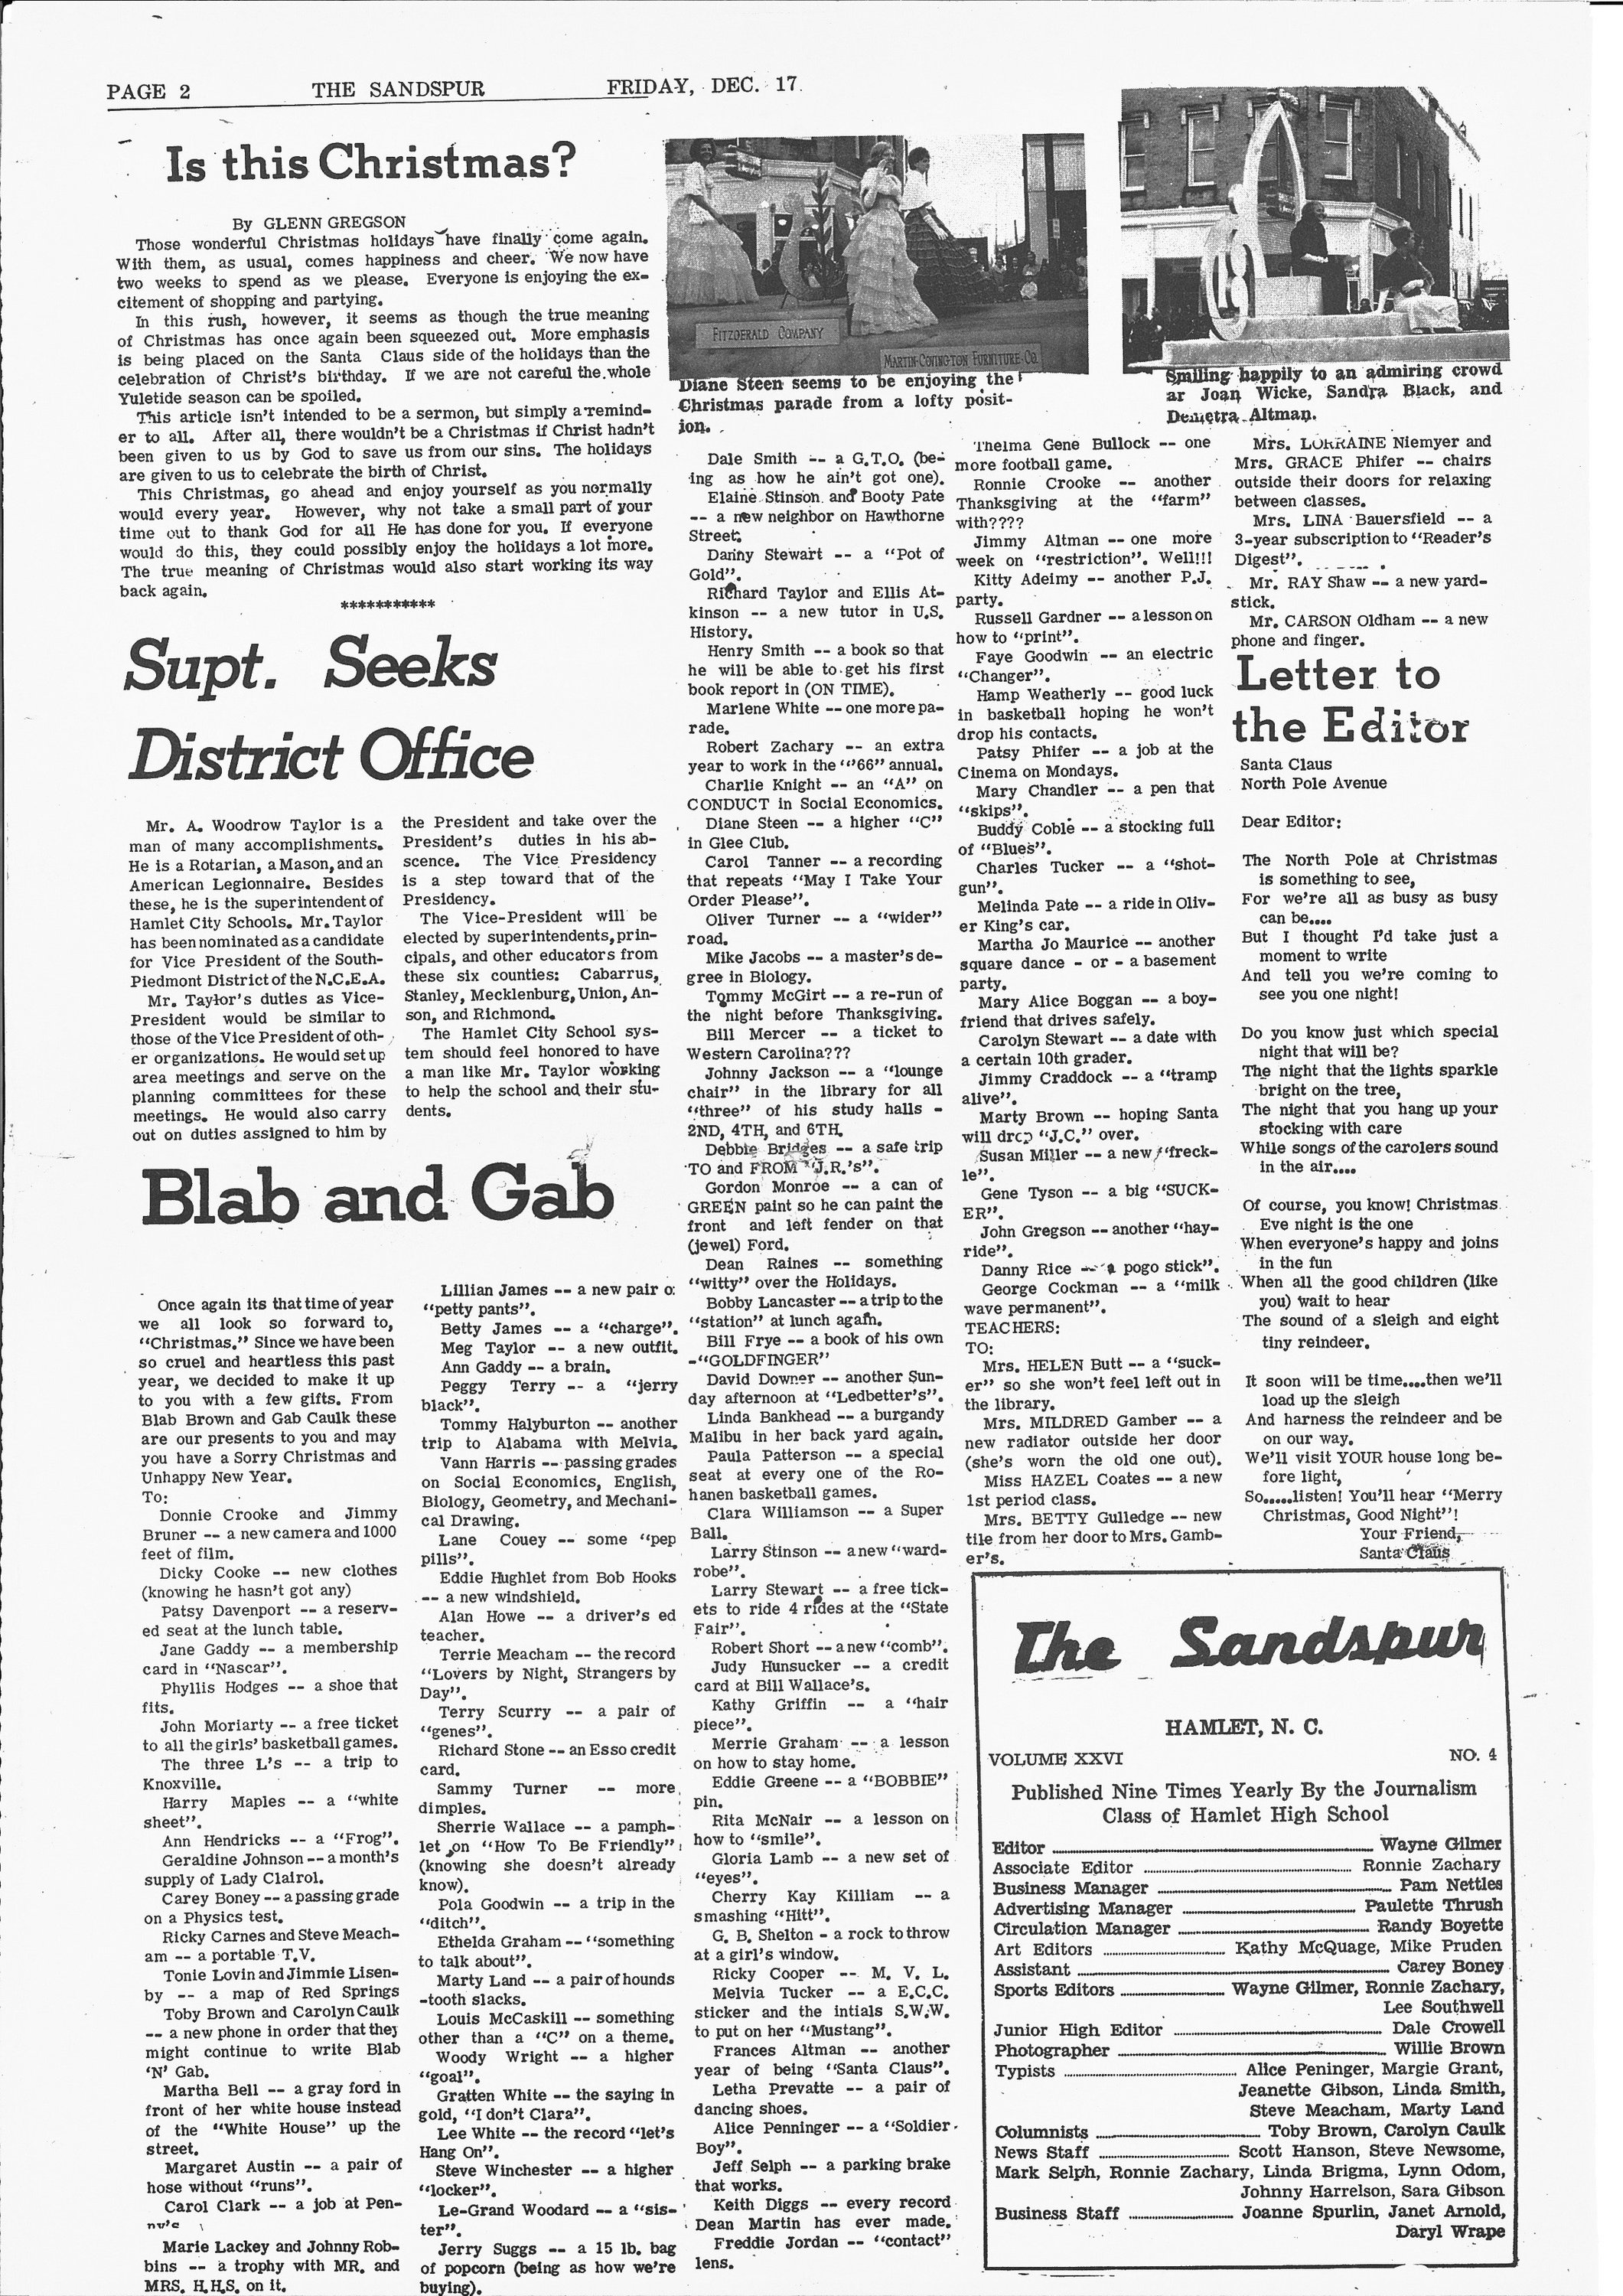 9 Sandspur_Dec 17 1965_Page_2.jpg